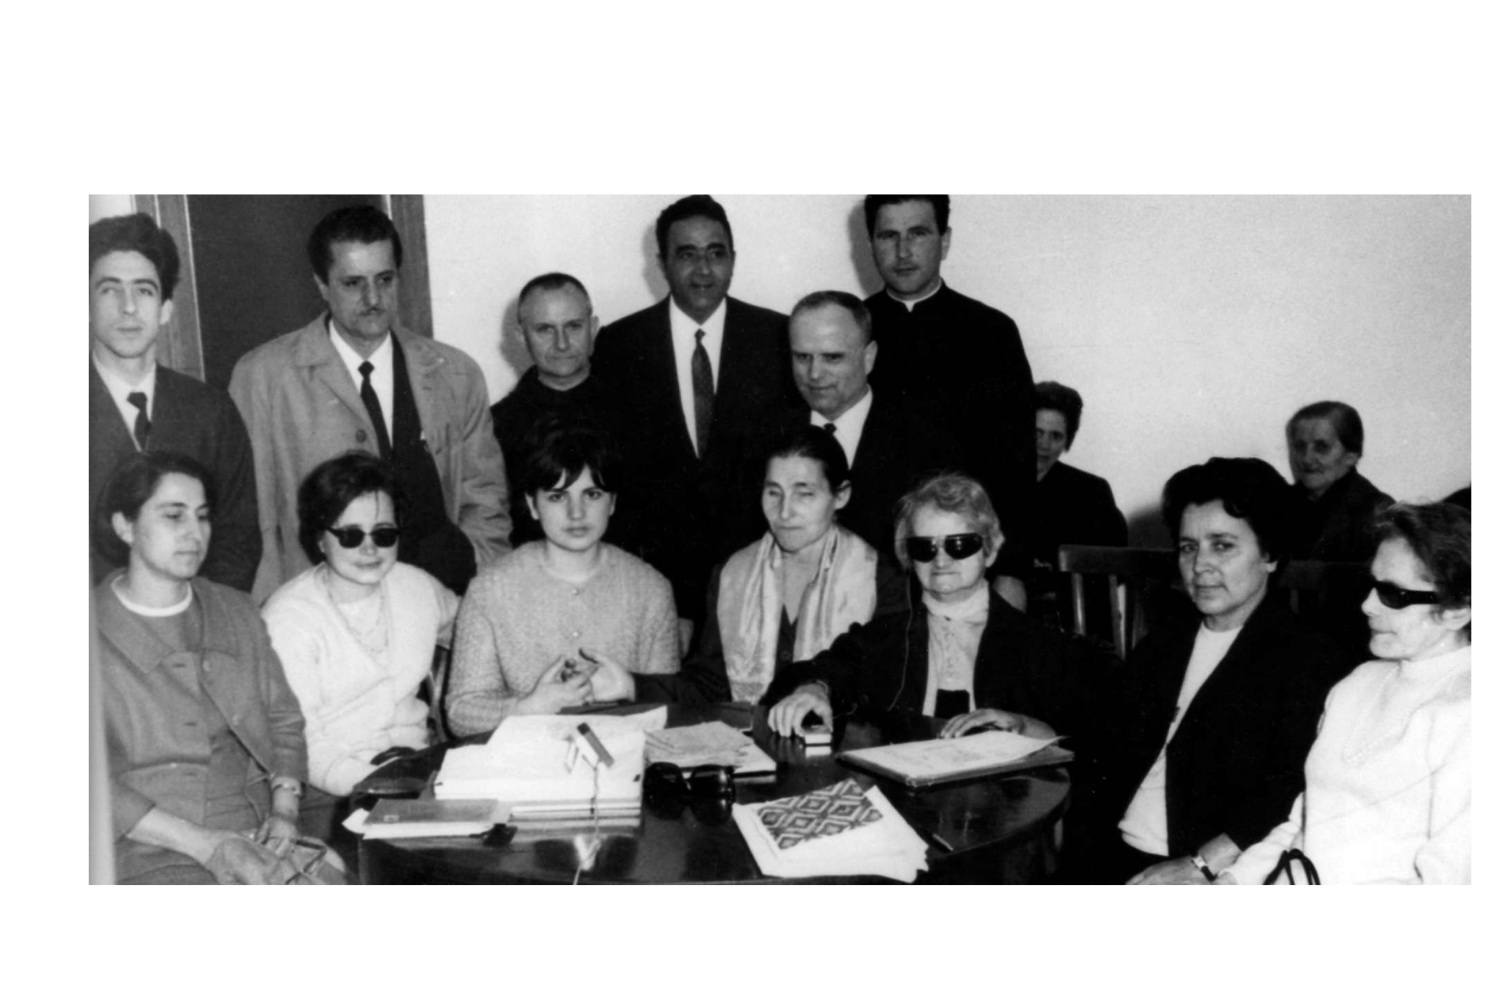 Foto di gruppo dei fondatori della Lega del Filo d'Oro. Sette donne tra cui anche Sabina Santilli, sono sedute attorno ad un tavolo. Dietro di loro sei uomini. L'immagine è in bianco e nero.